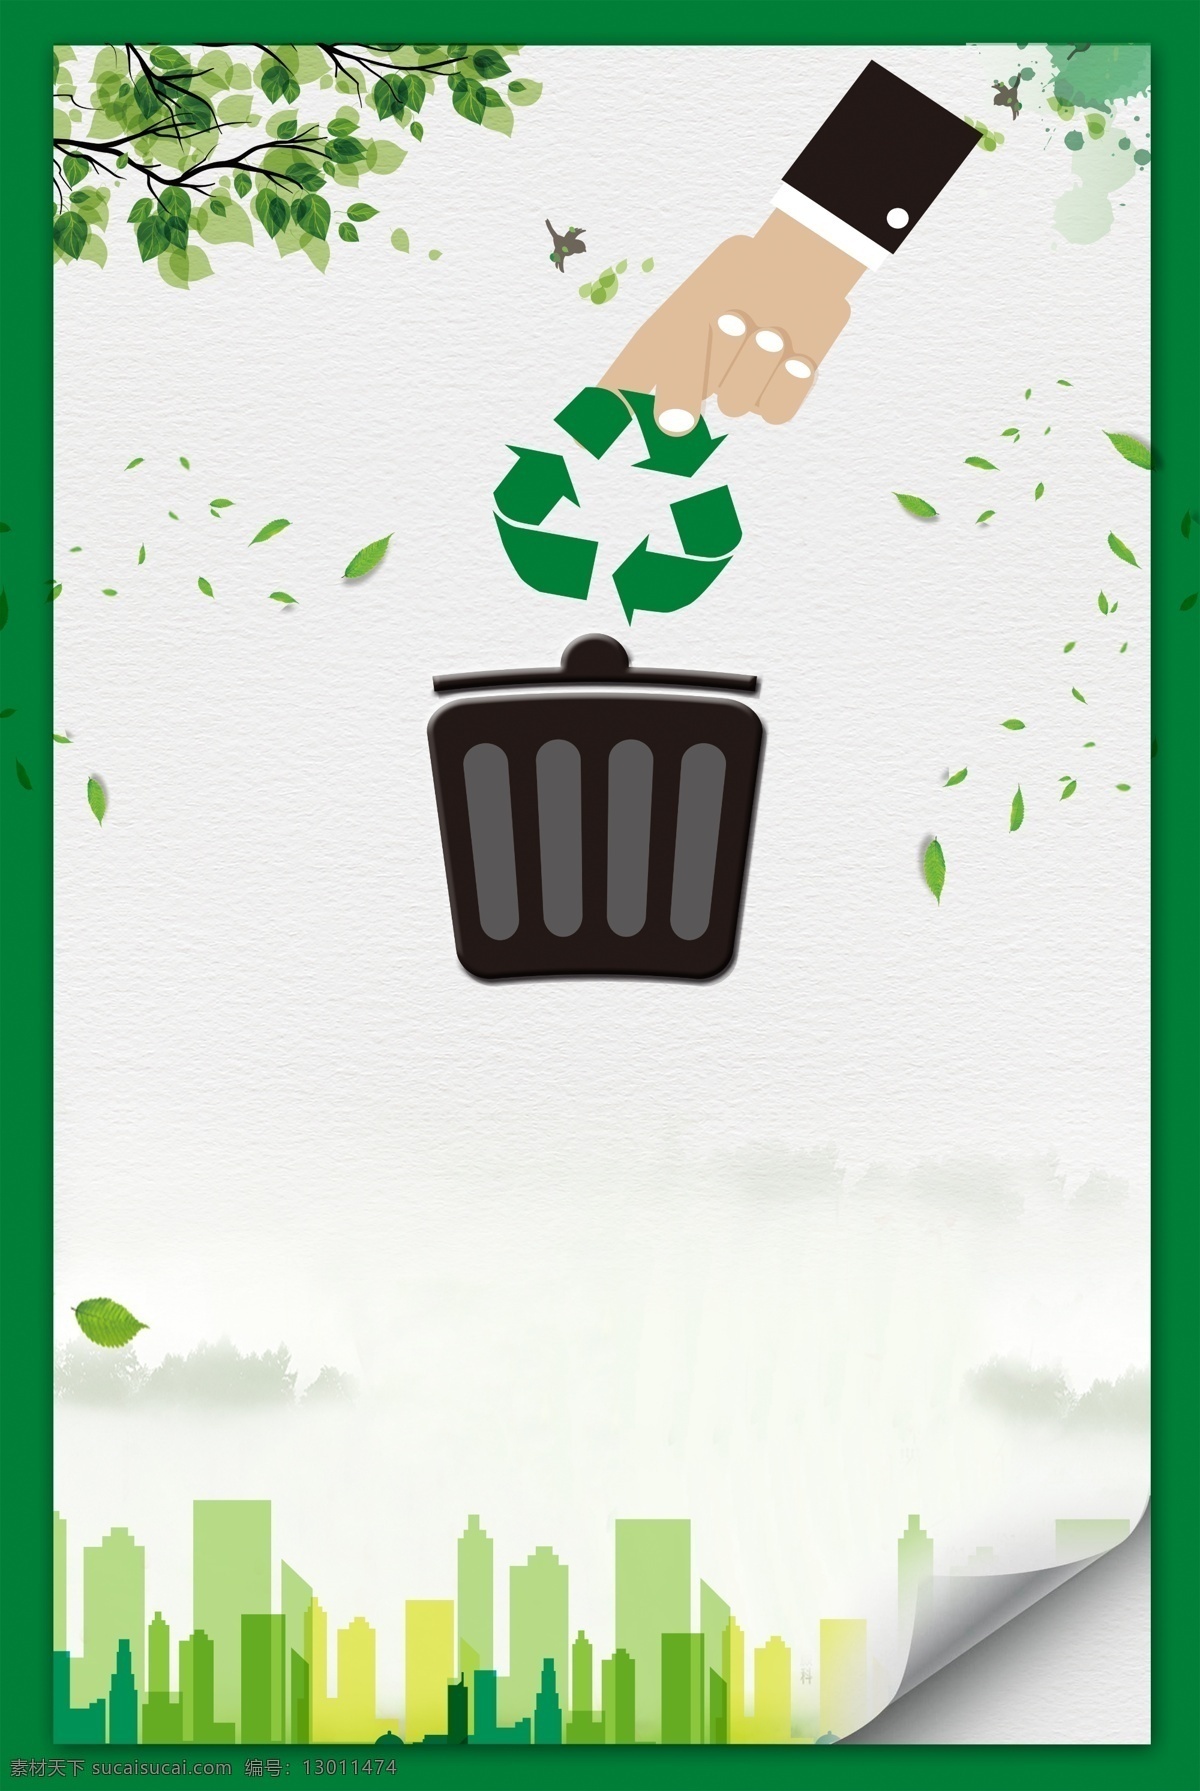 垃圾分类背景 垃圾分类 资源回收 垃圾回收 垃圾处理 垃圾污染 城市绿化 环保宣传 废品分类 回收废品 绿色城市 底纹边框 背景底纹